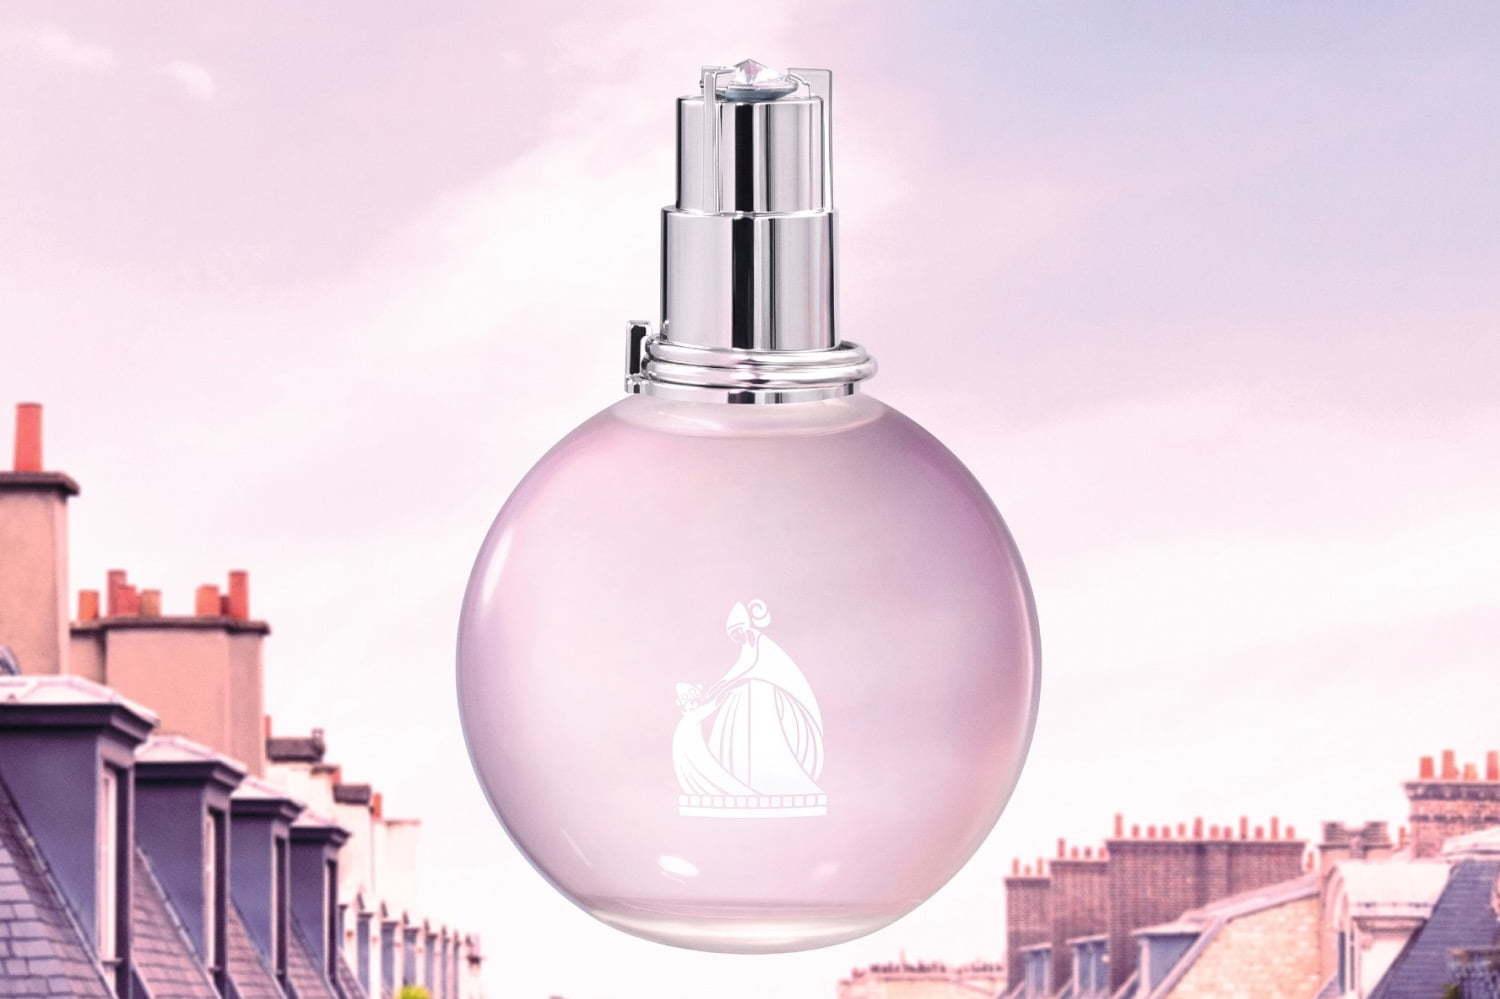 ランバンの香水「エクラ・ドゥ・アルページュ」新作、ピンクサテンドレスイメージのボトル 